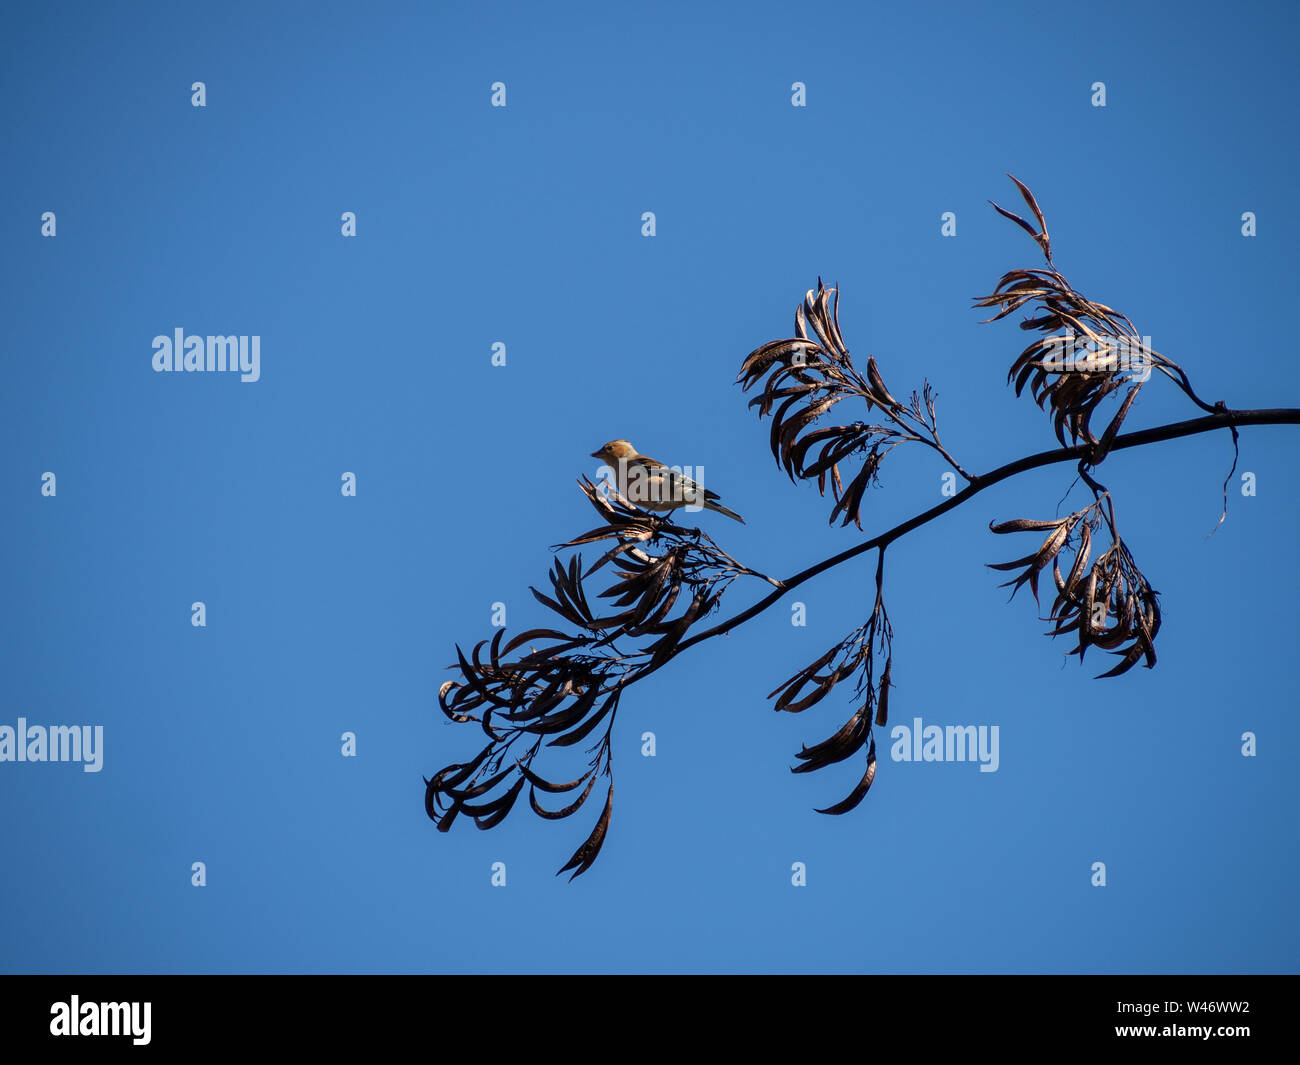 Otoño en Nueva Zelanda, un pequeño pájaro descansa sobre el tallo de un arbusto de lino con vainas secas Foto de stock